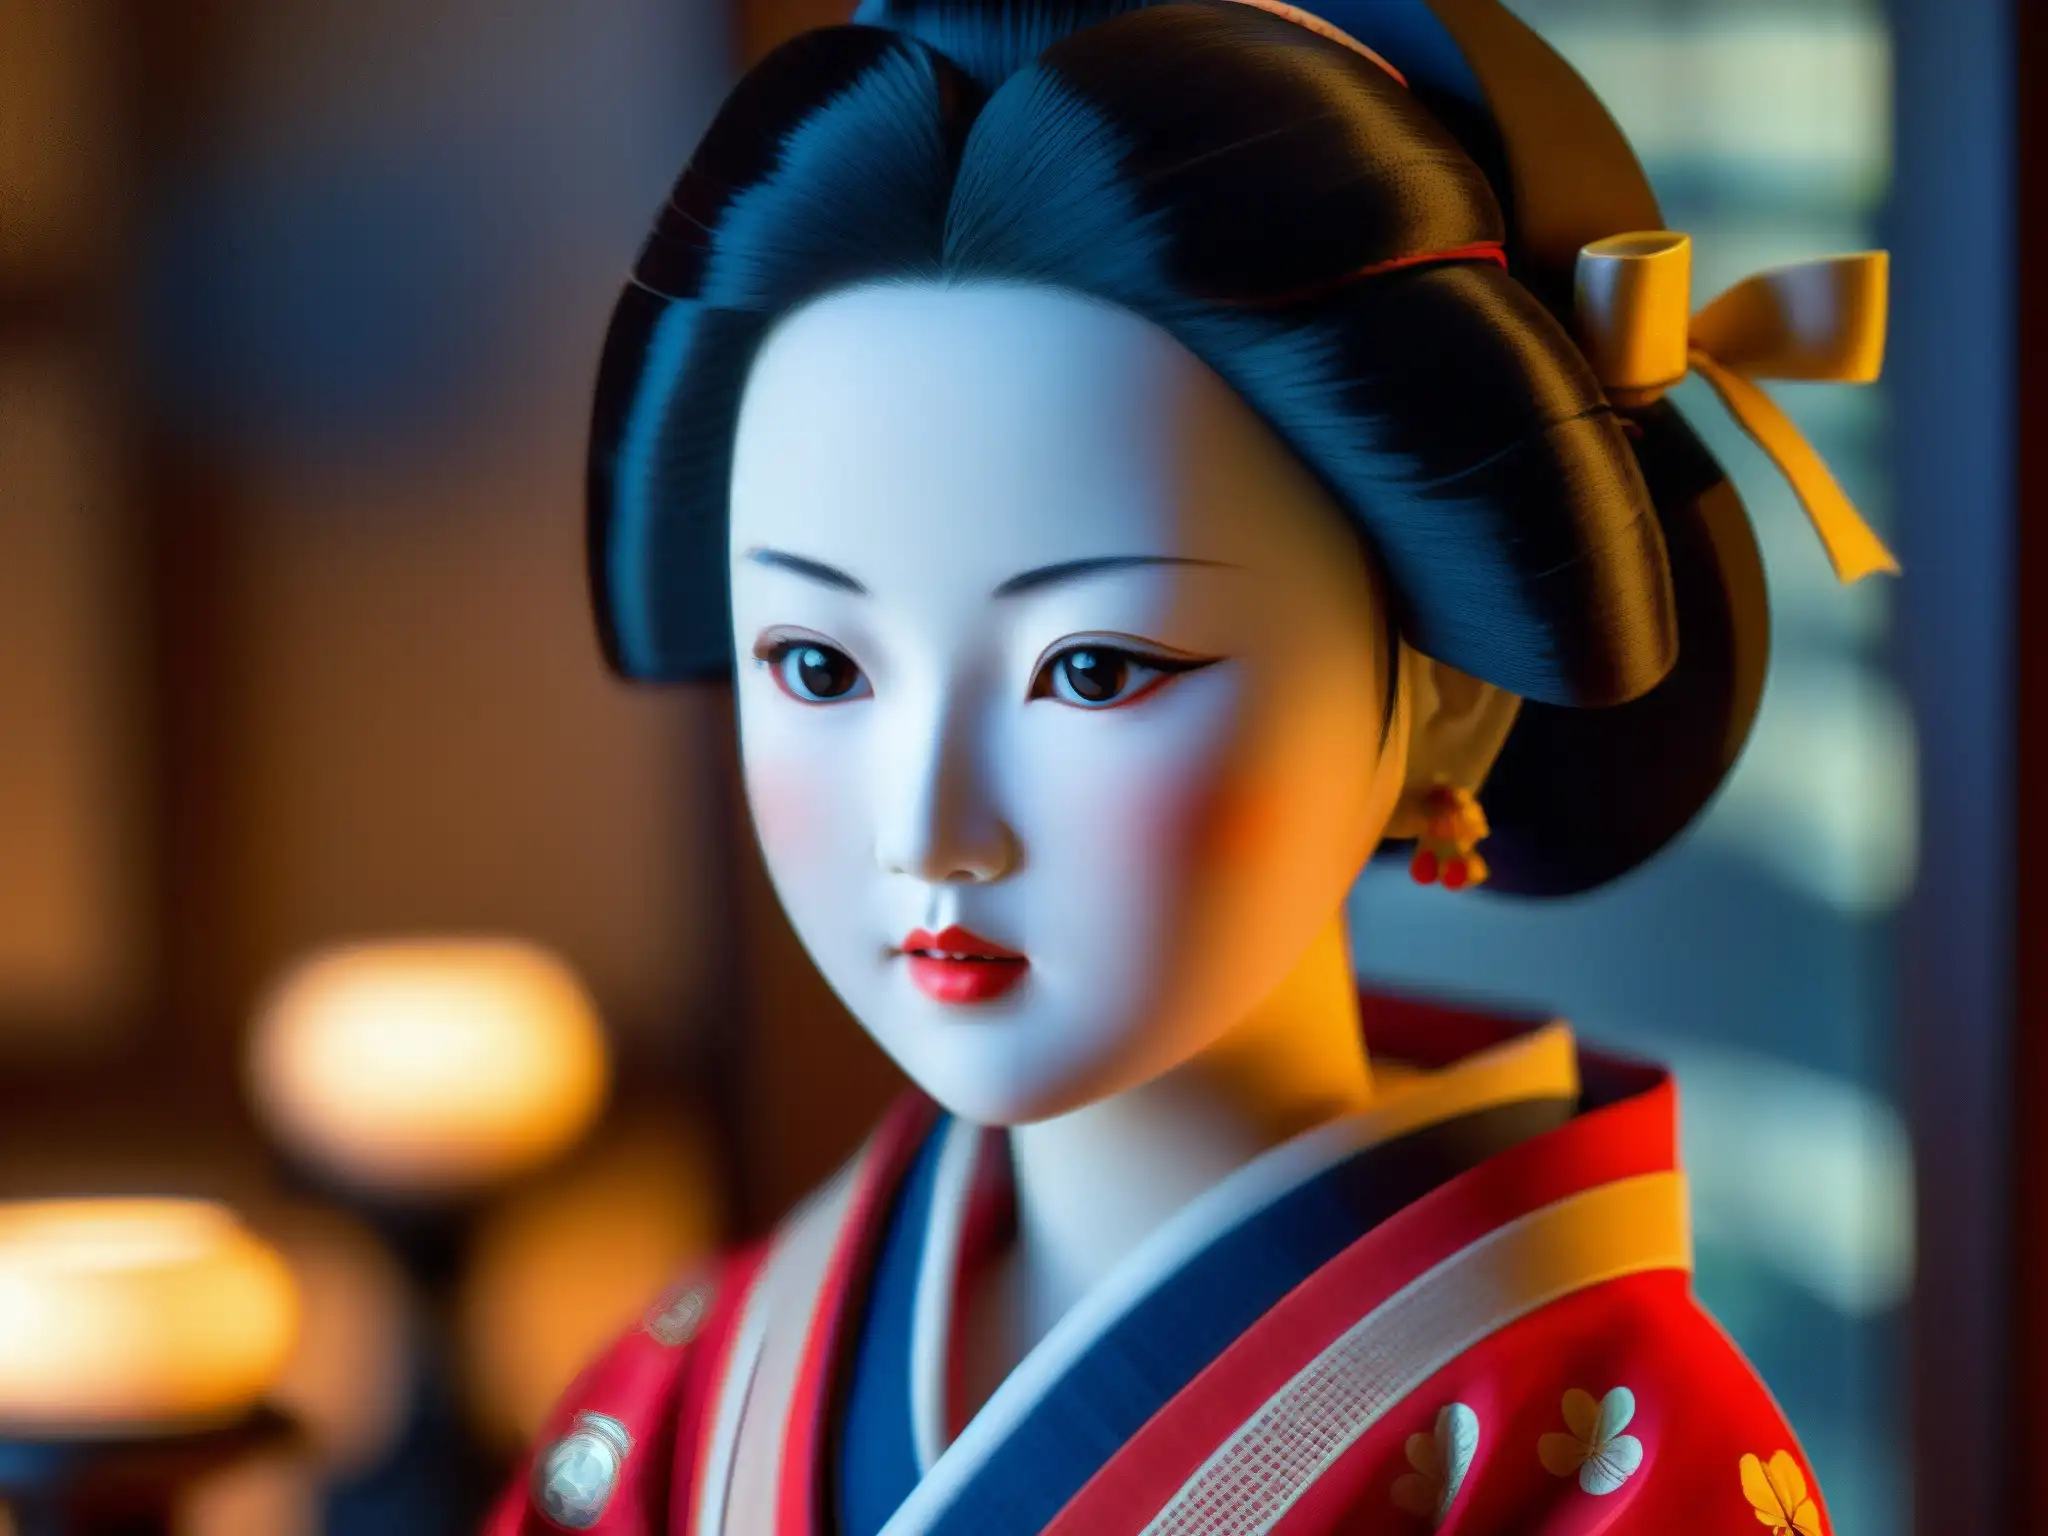 Detalle de la muñeca Okiku en un estilo documental japonés, resaltando su delicada vestimenta y misteriosa apariencia